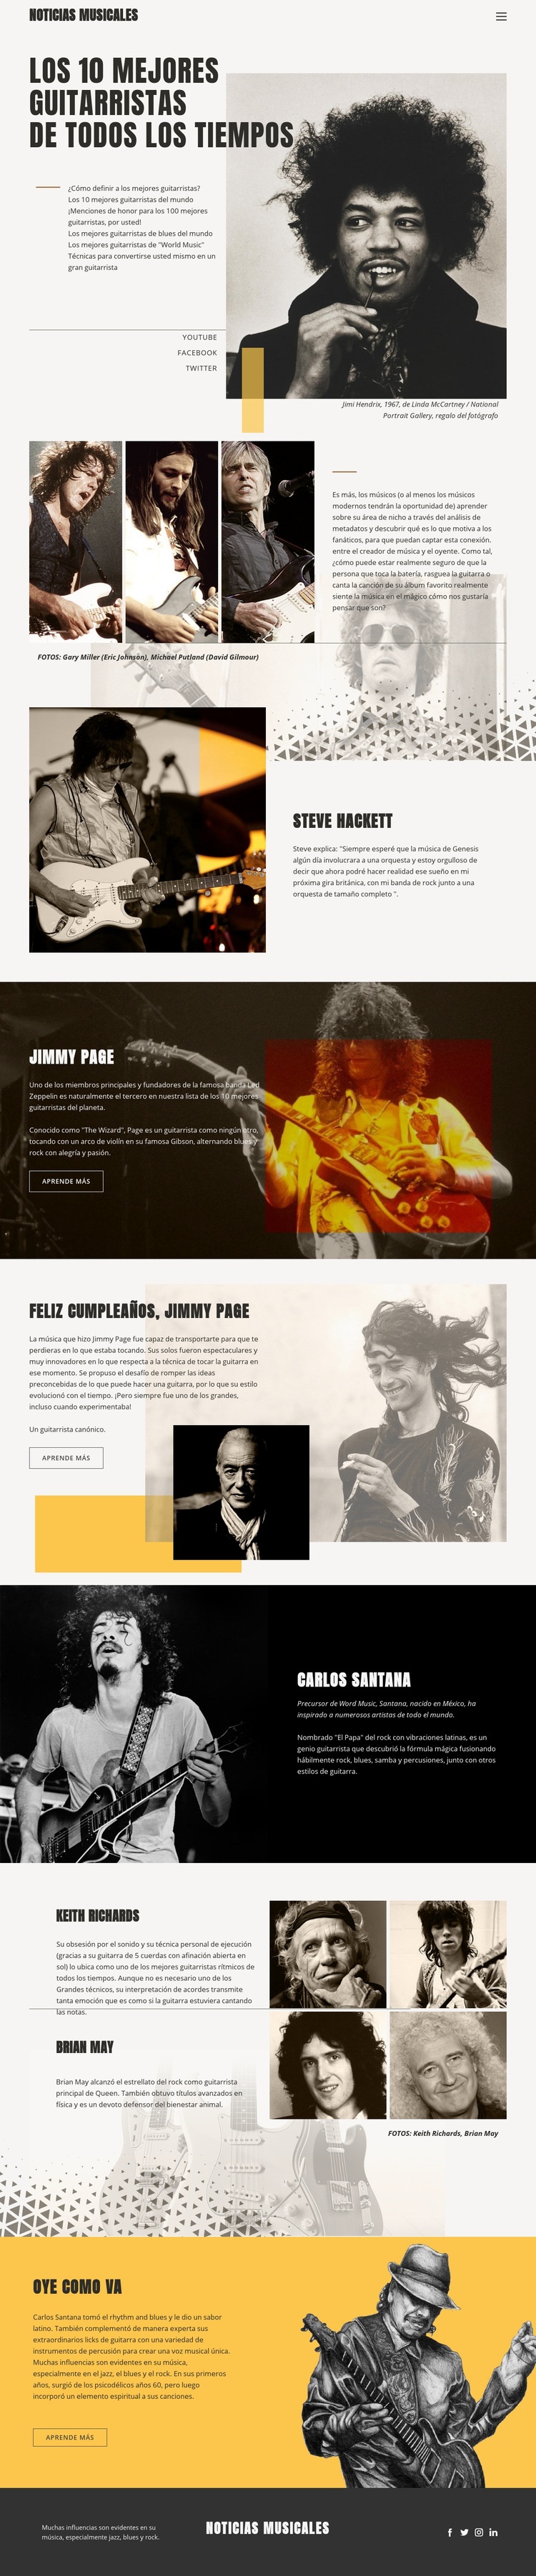 Los mejores guitarristas Maqueta de sitio web